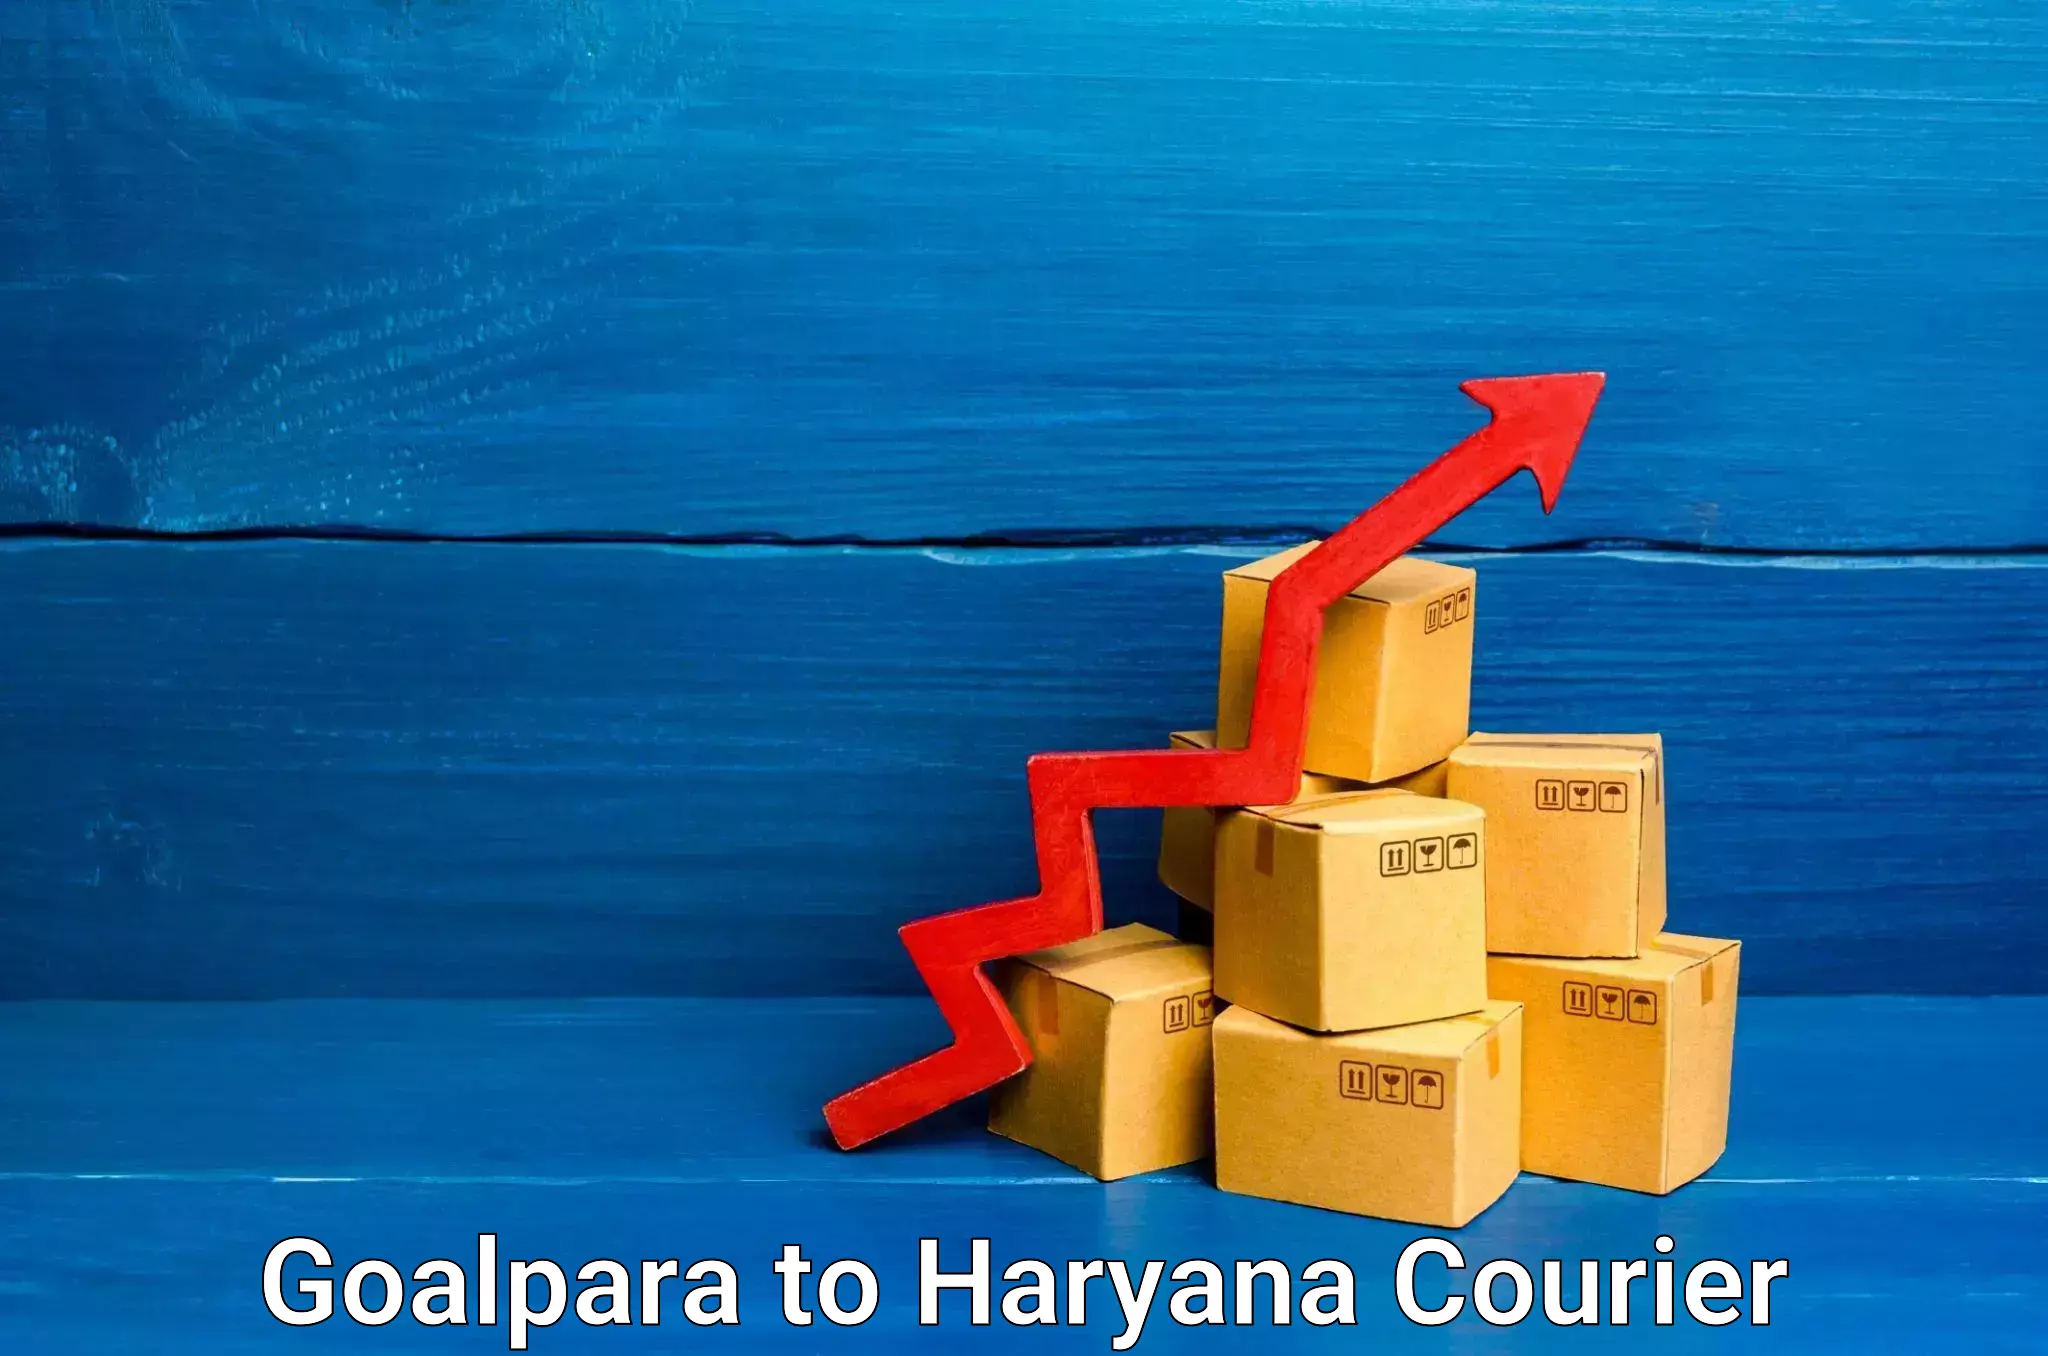 Courier service efficiency Goalpara to Samalkha